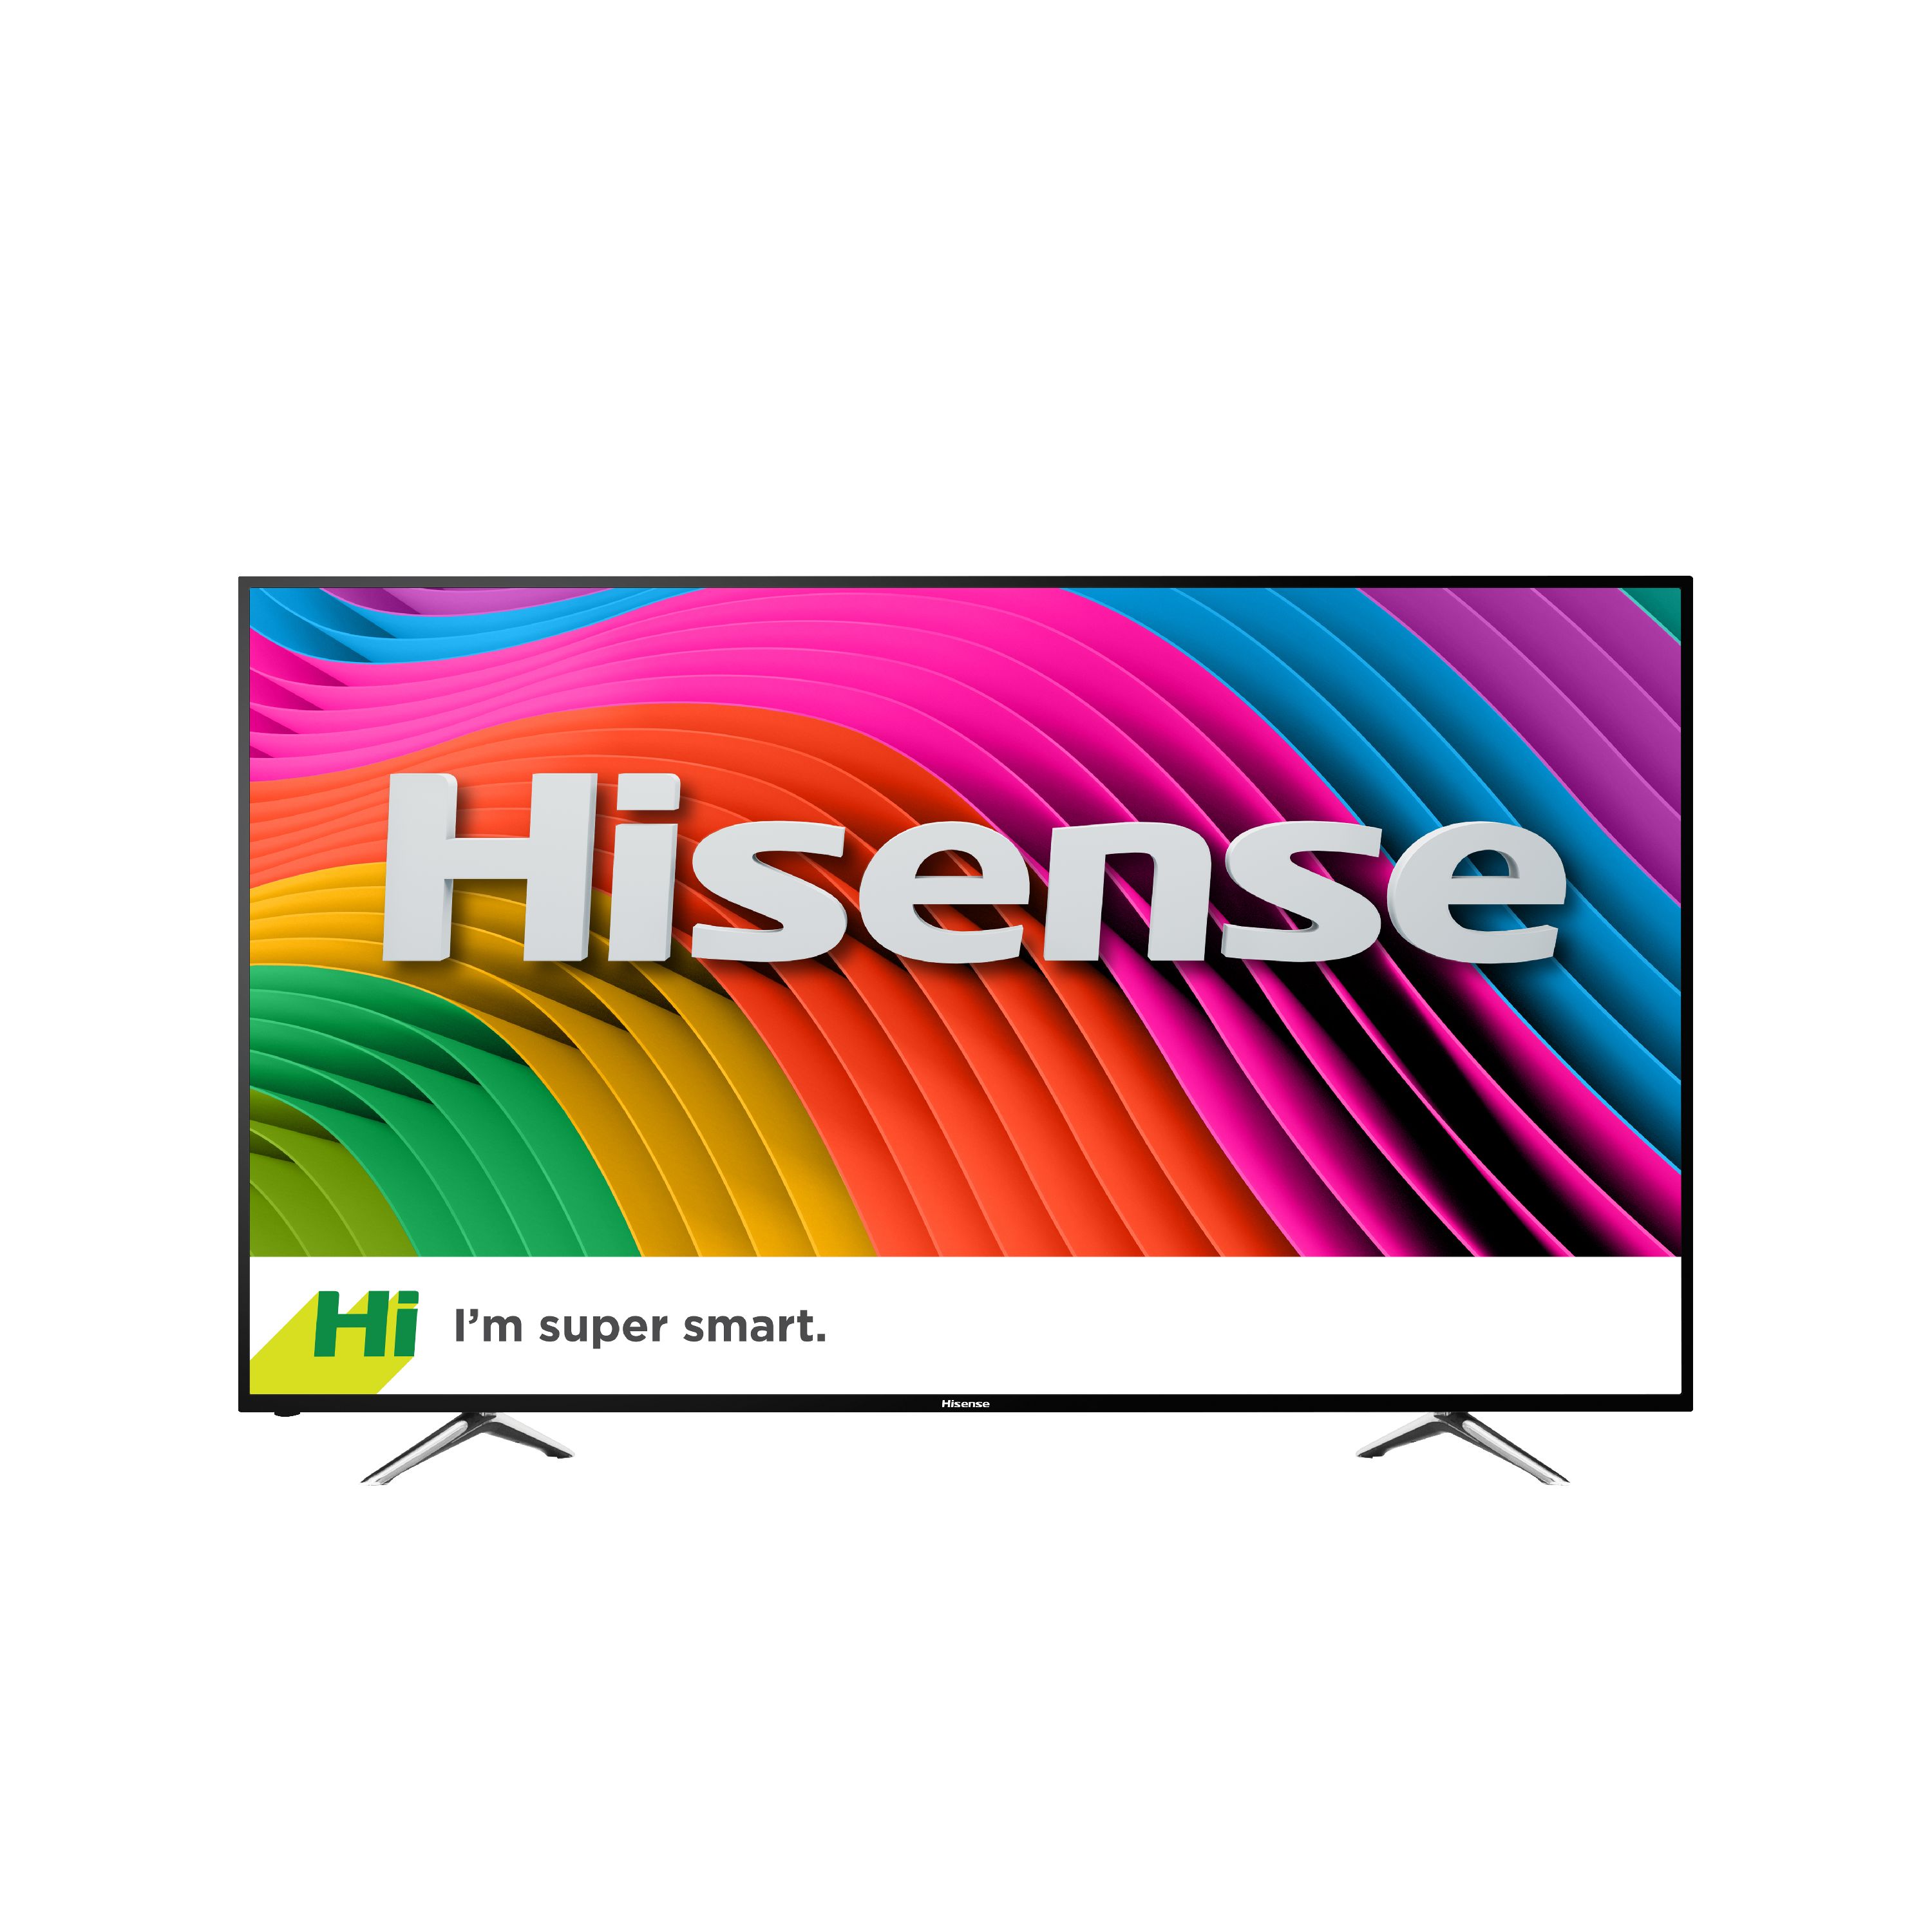 Hisense 50" Class 4K UHDTV (2160p) Smart LED-LCD TV (50H7C) - image 1 of 8